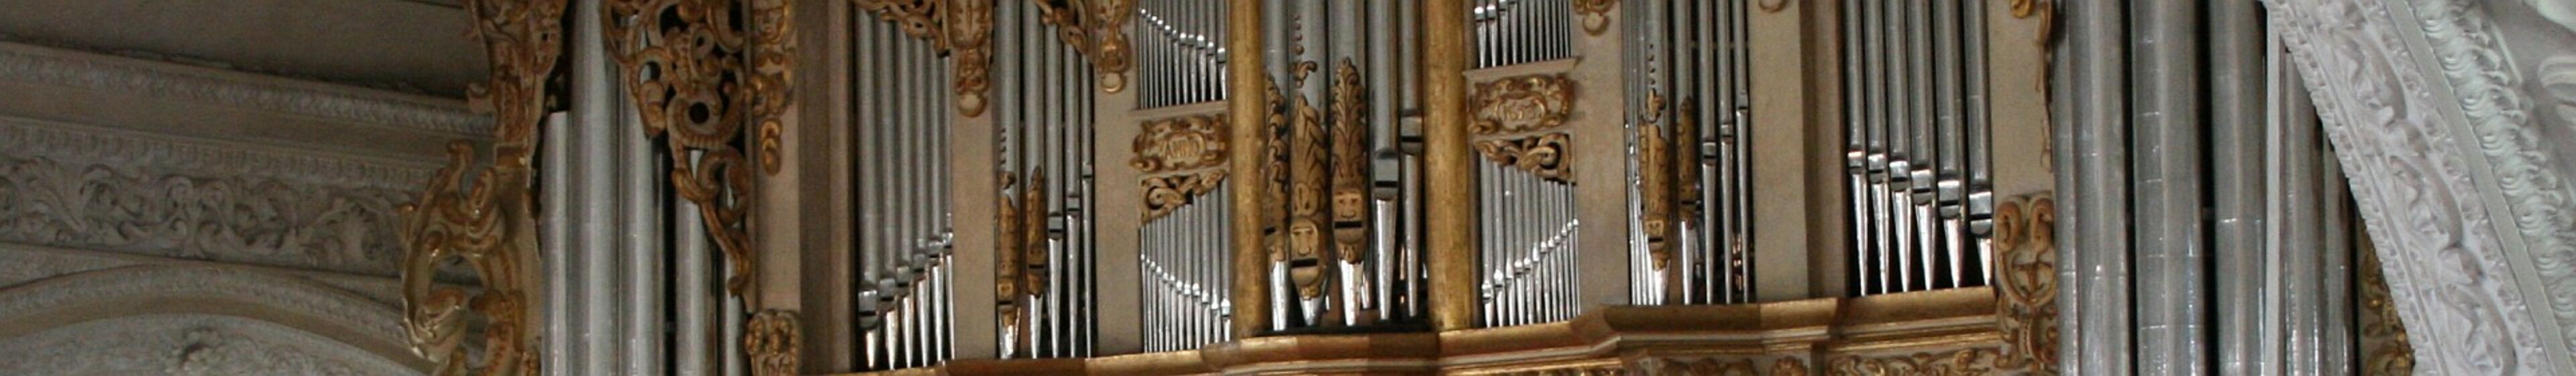 Orgel-von-1653_1920x280